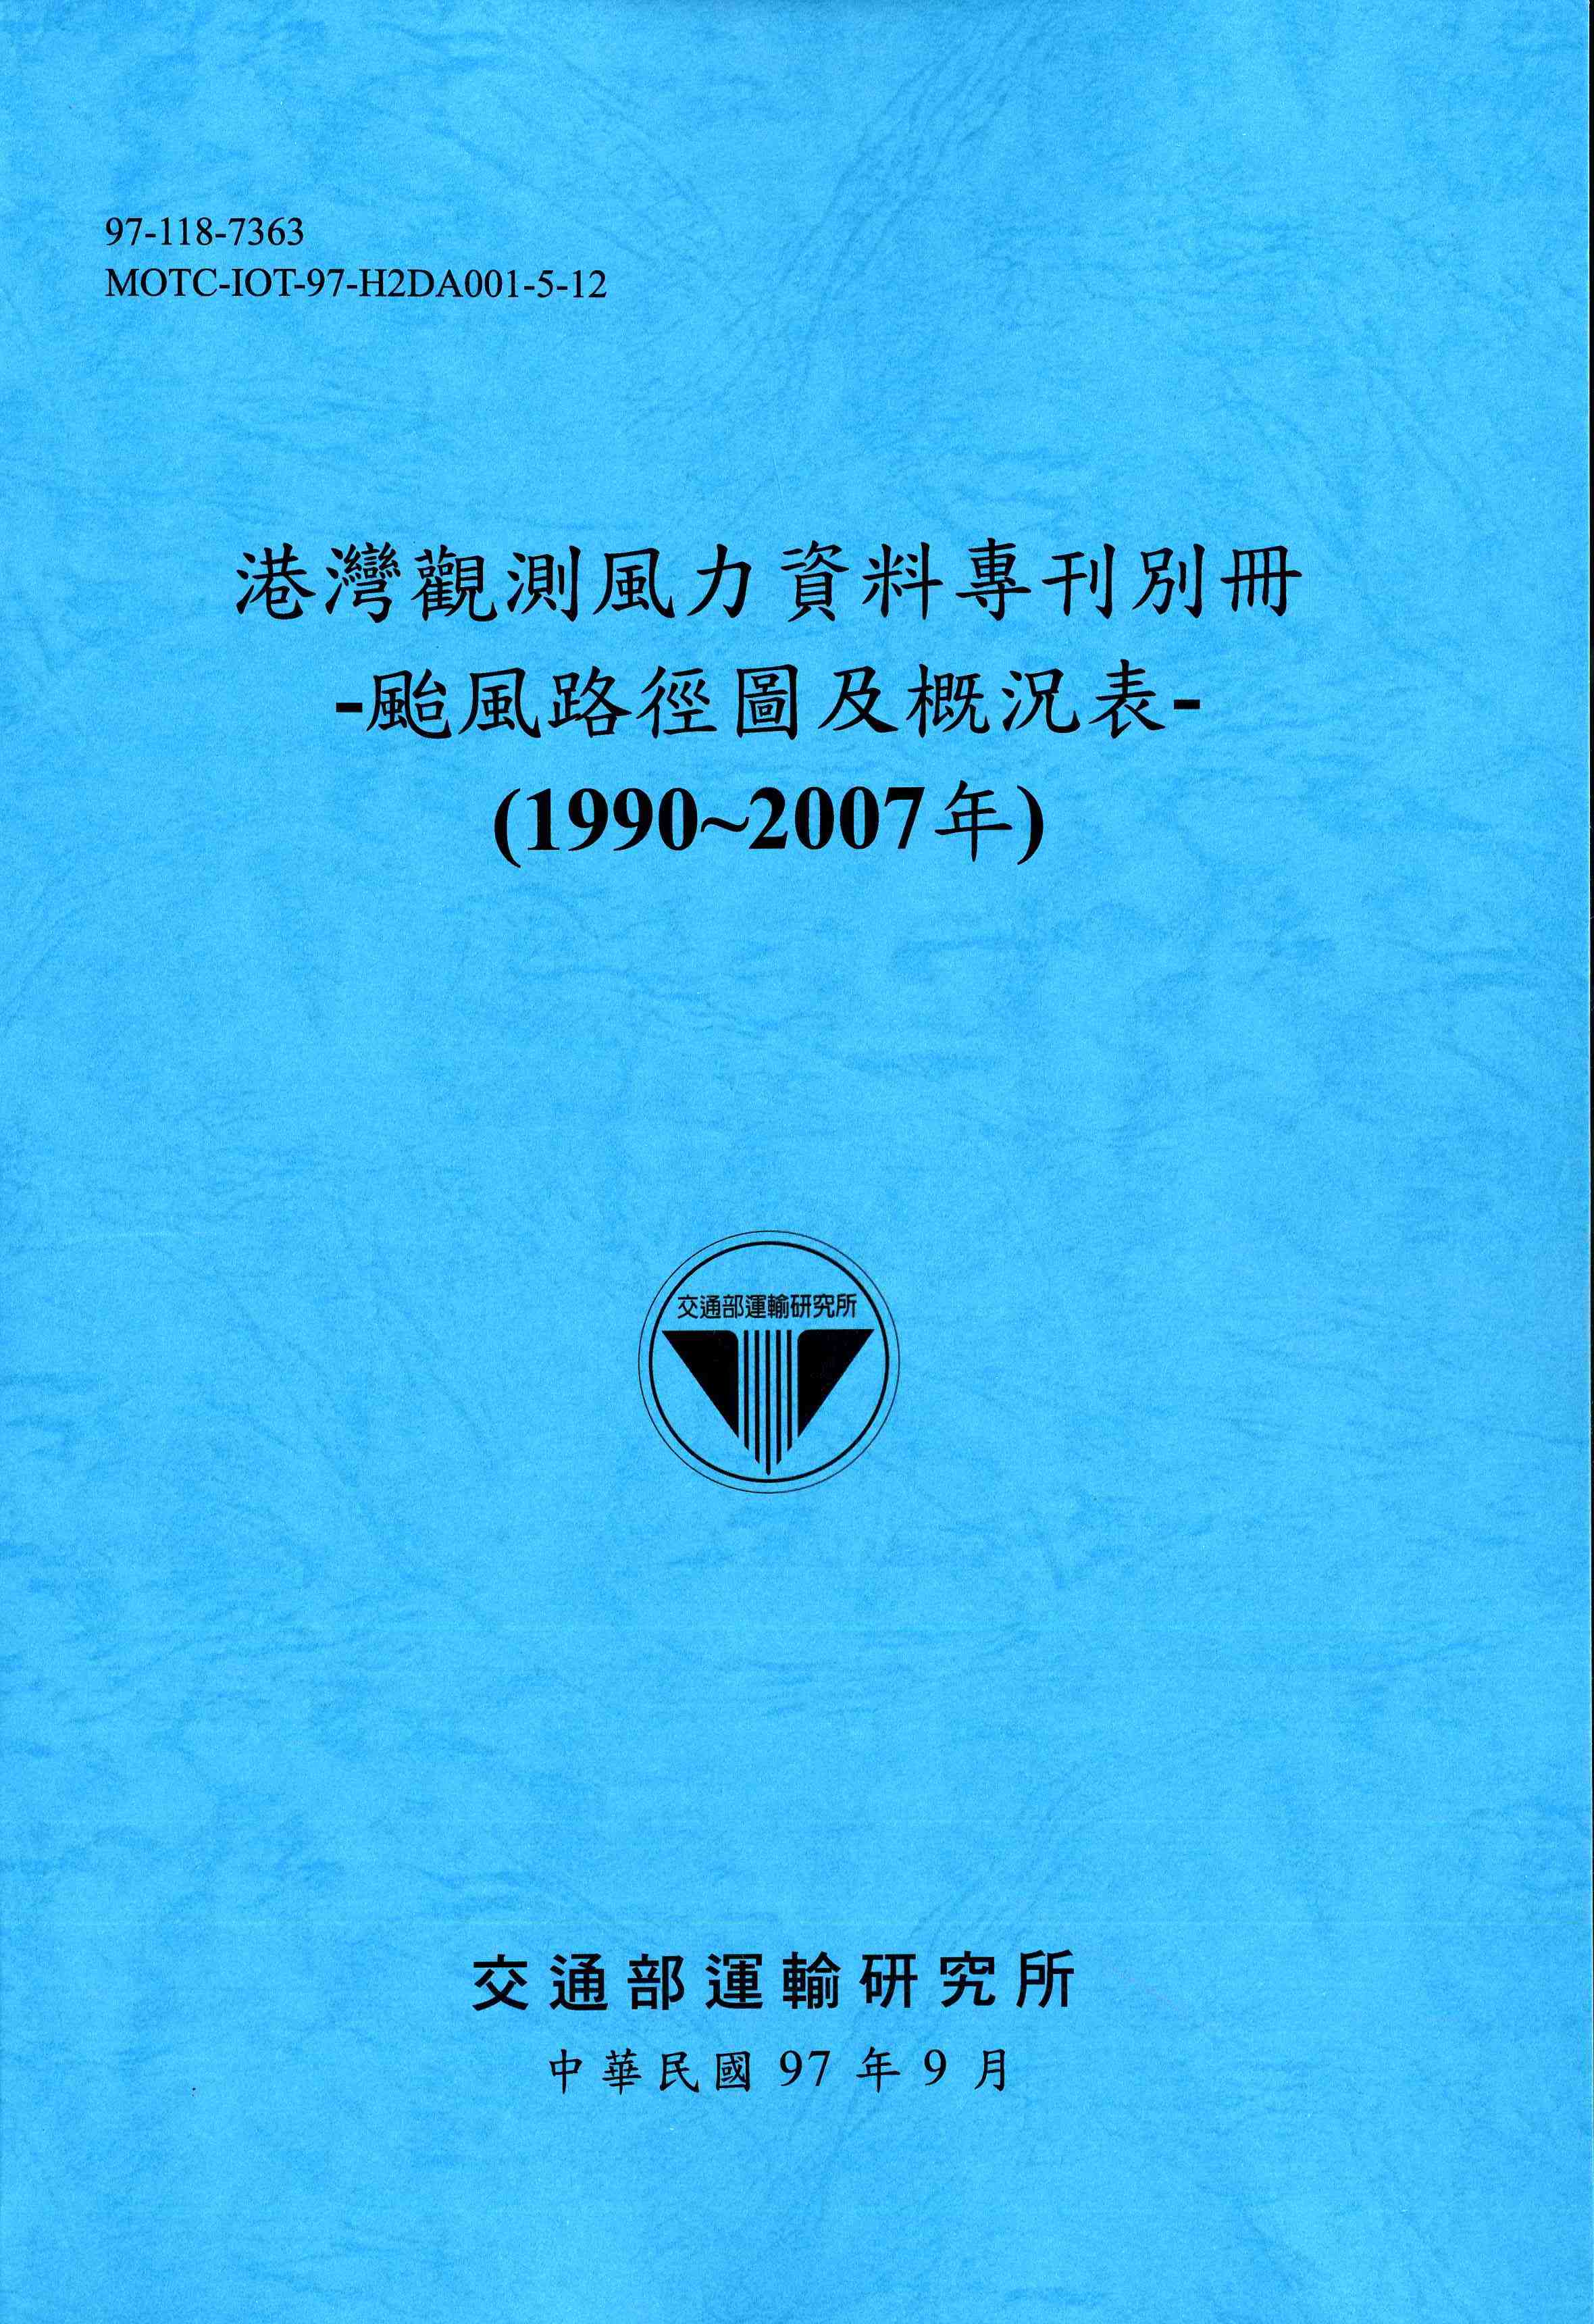 港灣觀測風力資料專刊別冊:颱風路徑圖及概況表(1990~2007年)